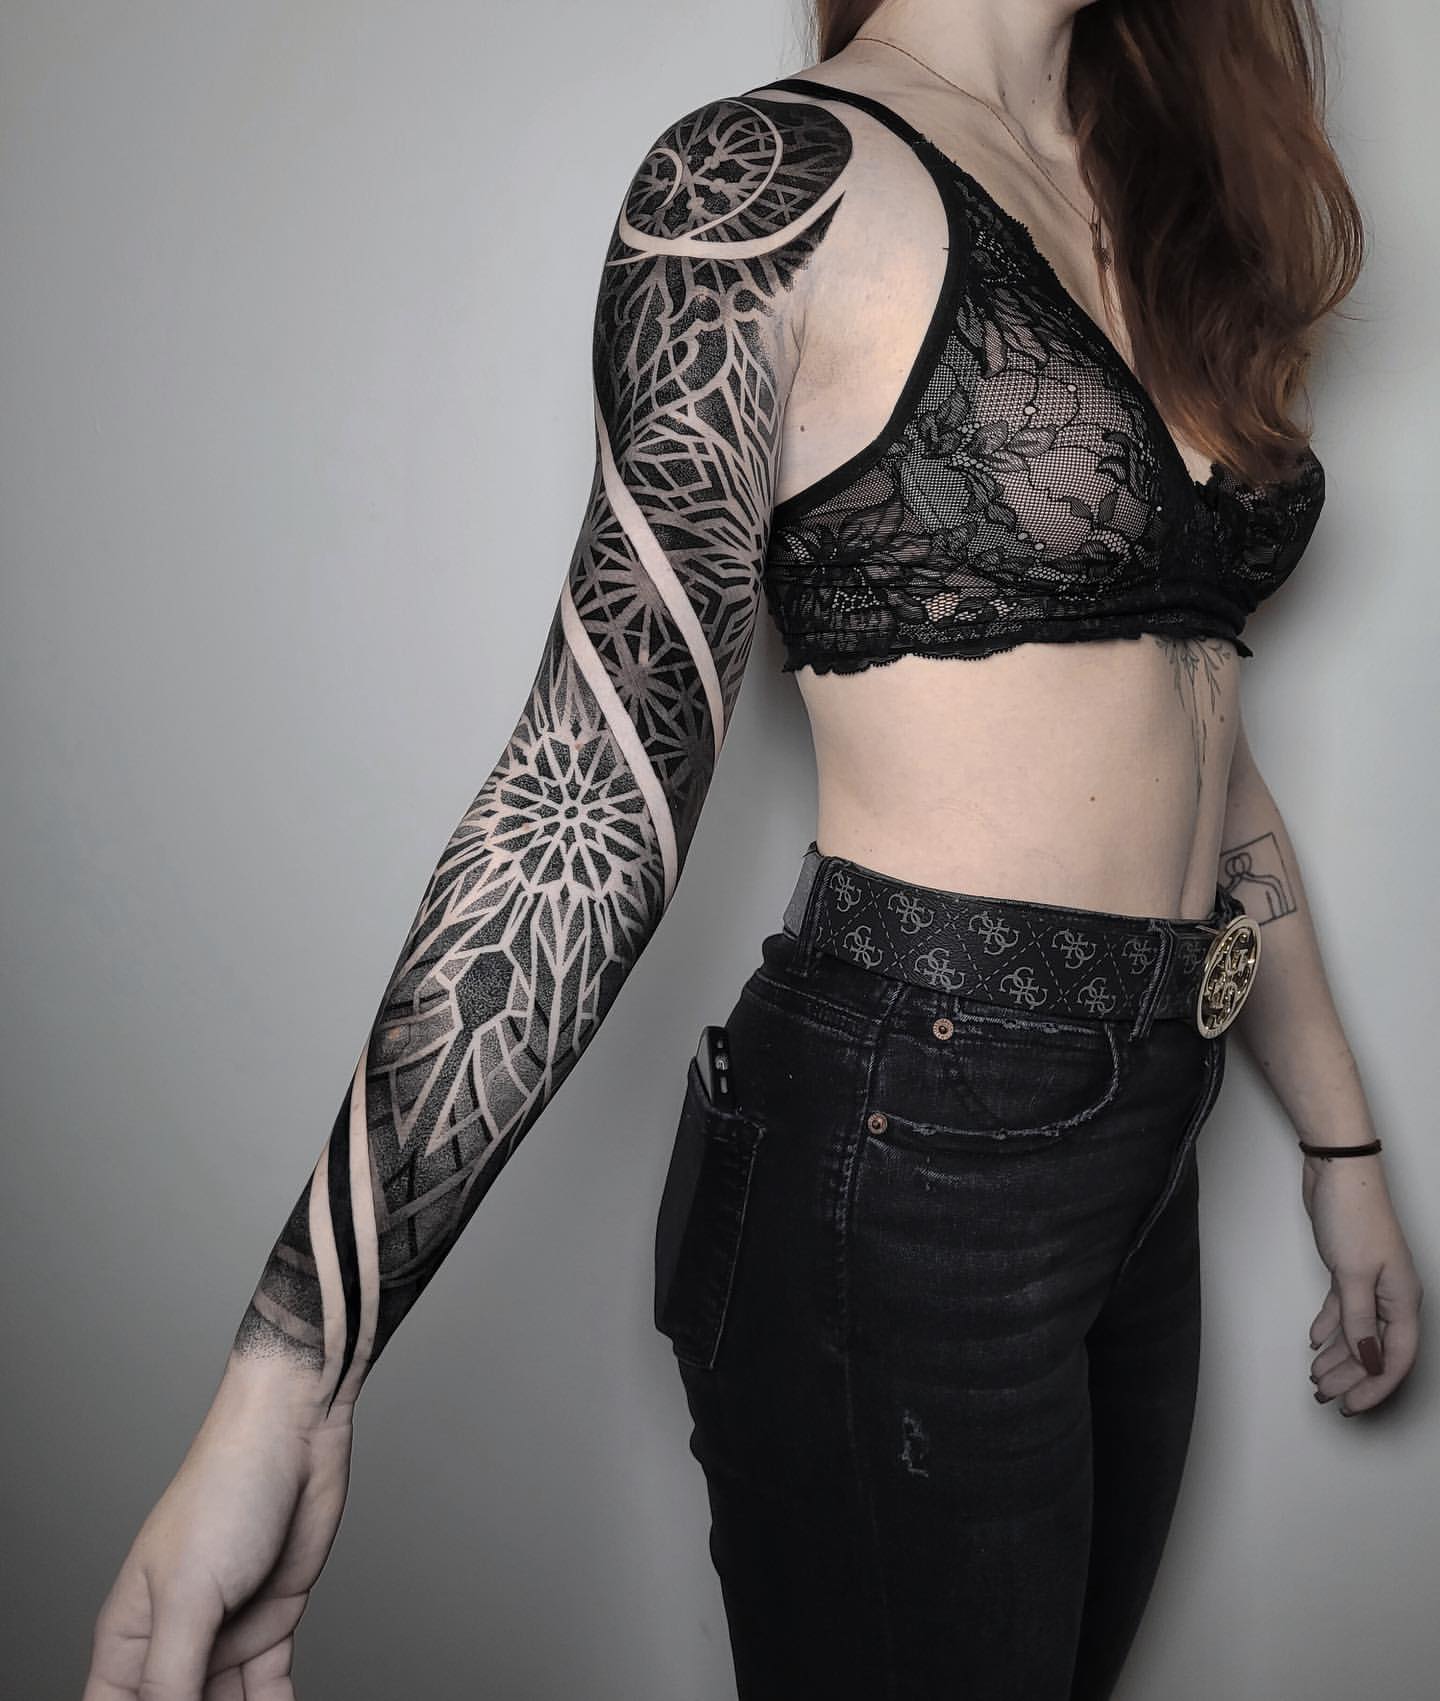 Full Sleeve Tattoos for Women 19